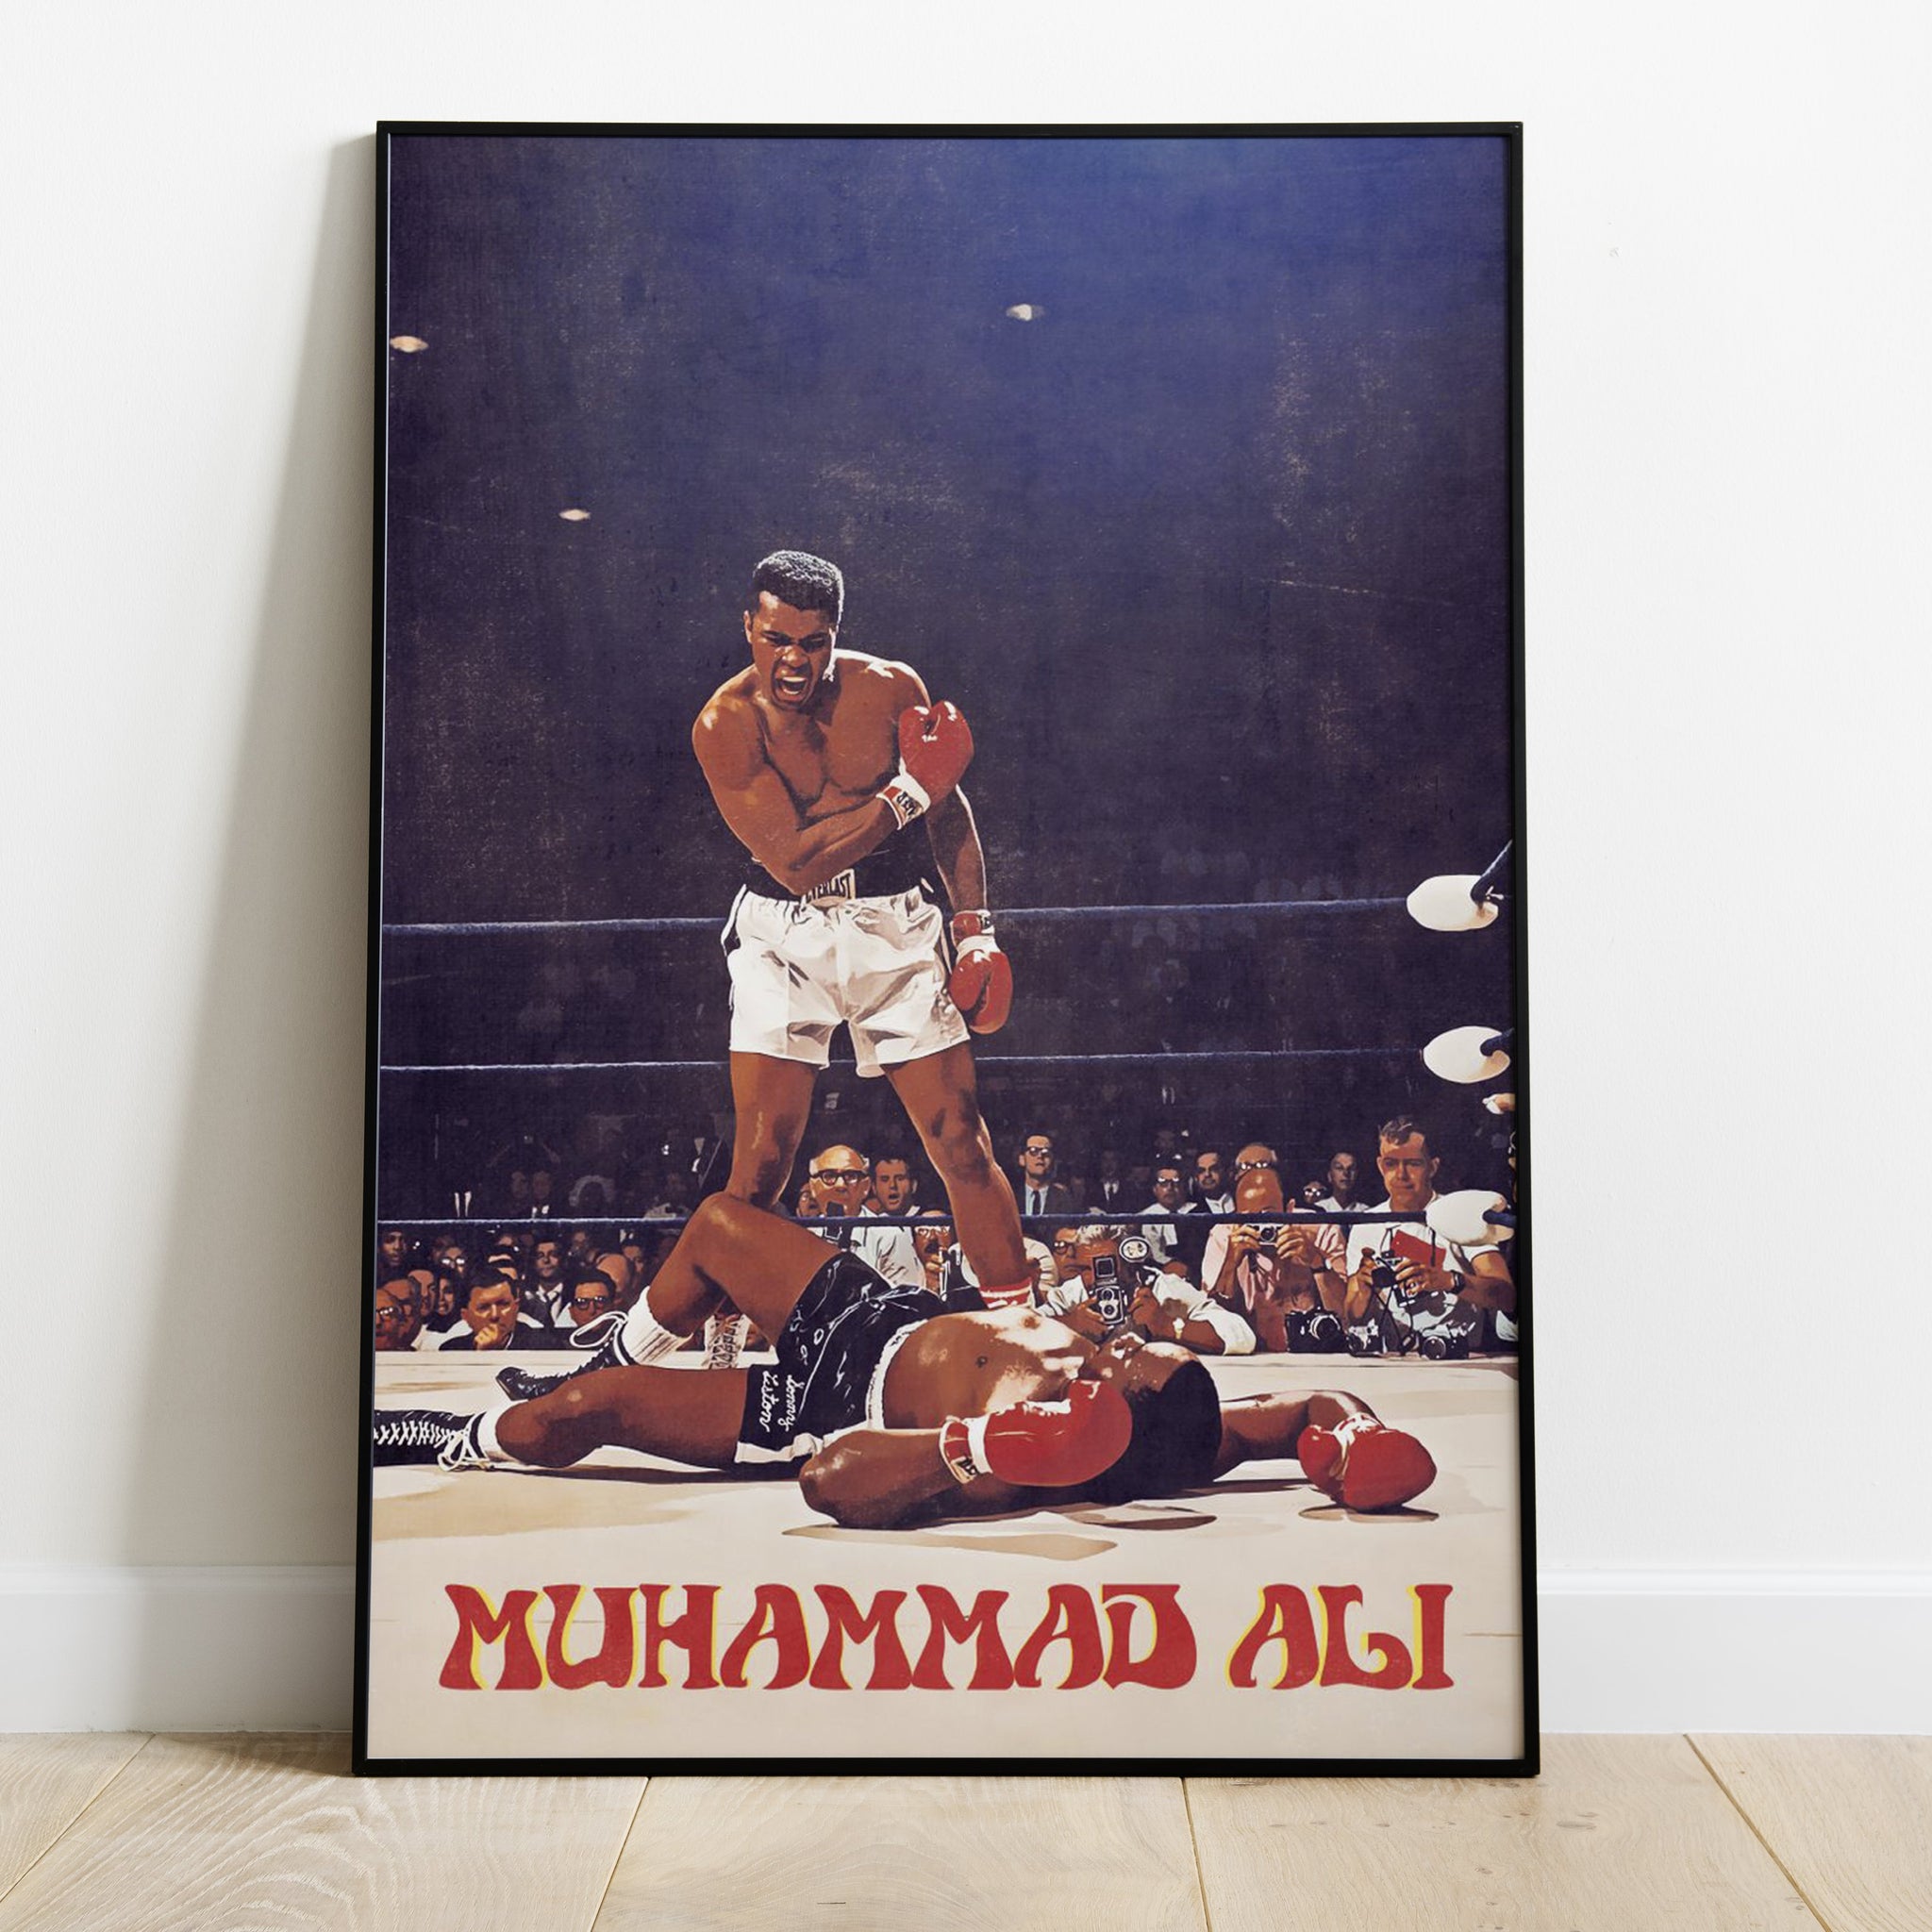 Muhammad Ali Legends Premium Poster - Team Spirit Store USA 